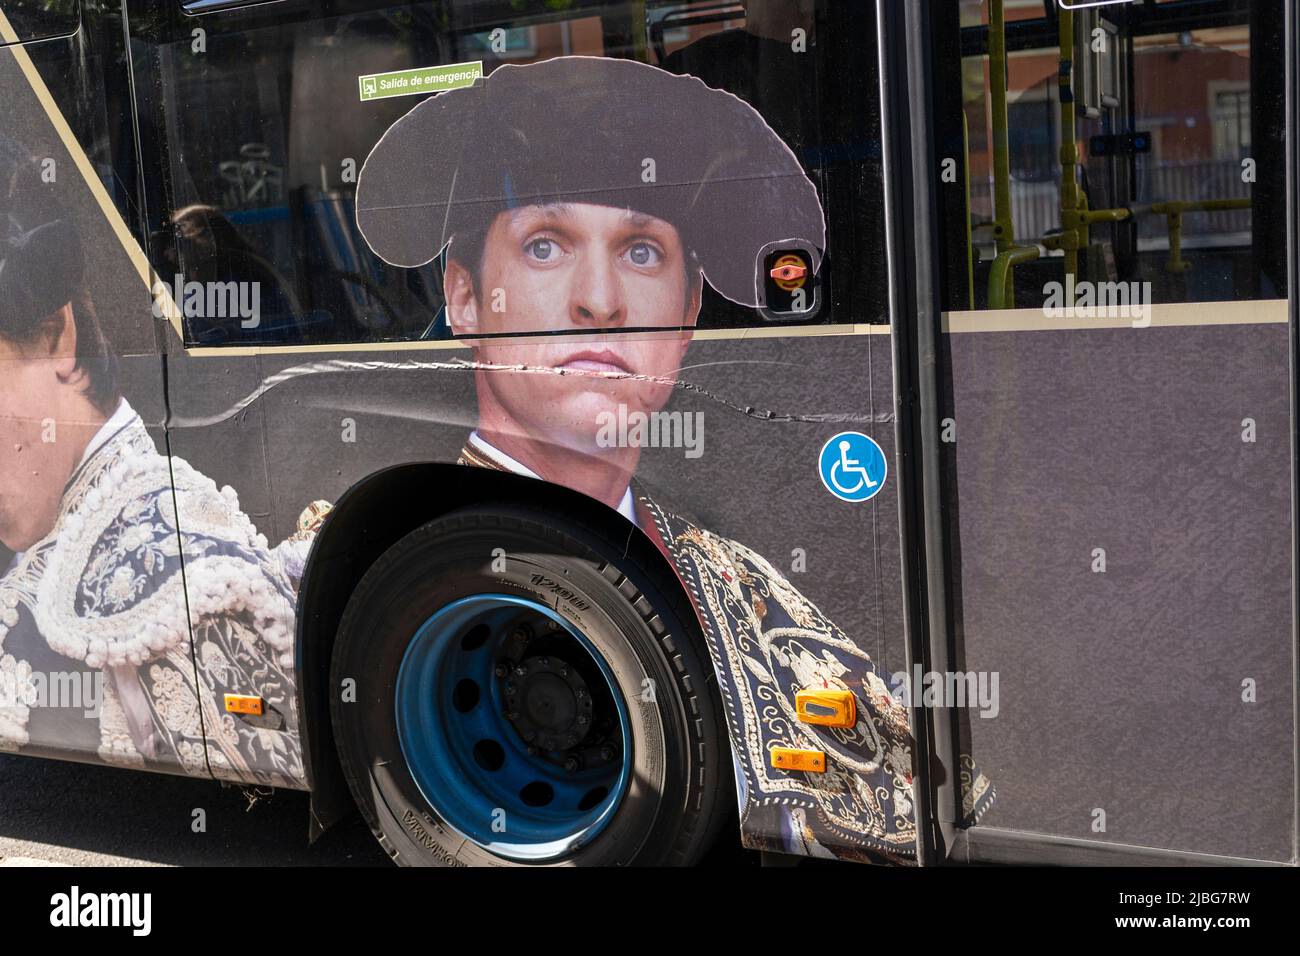 Image matador dans un bus à Madrid Espagne Banque D'Images